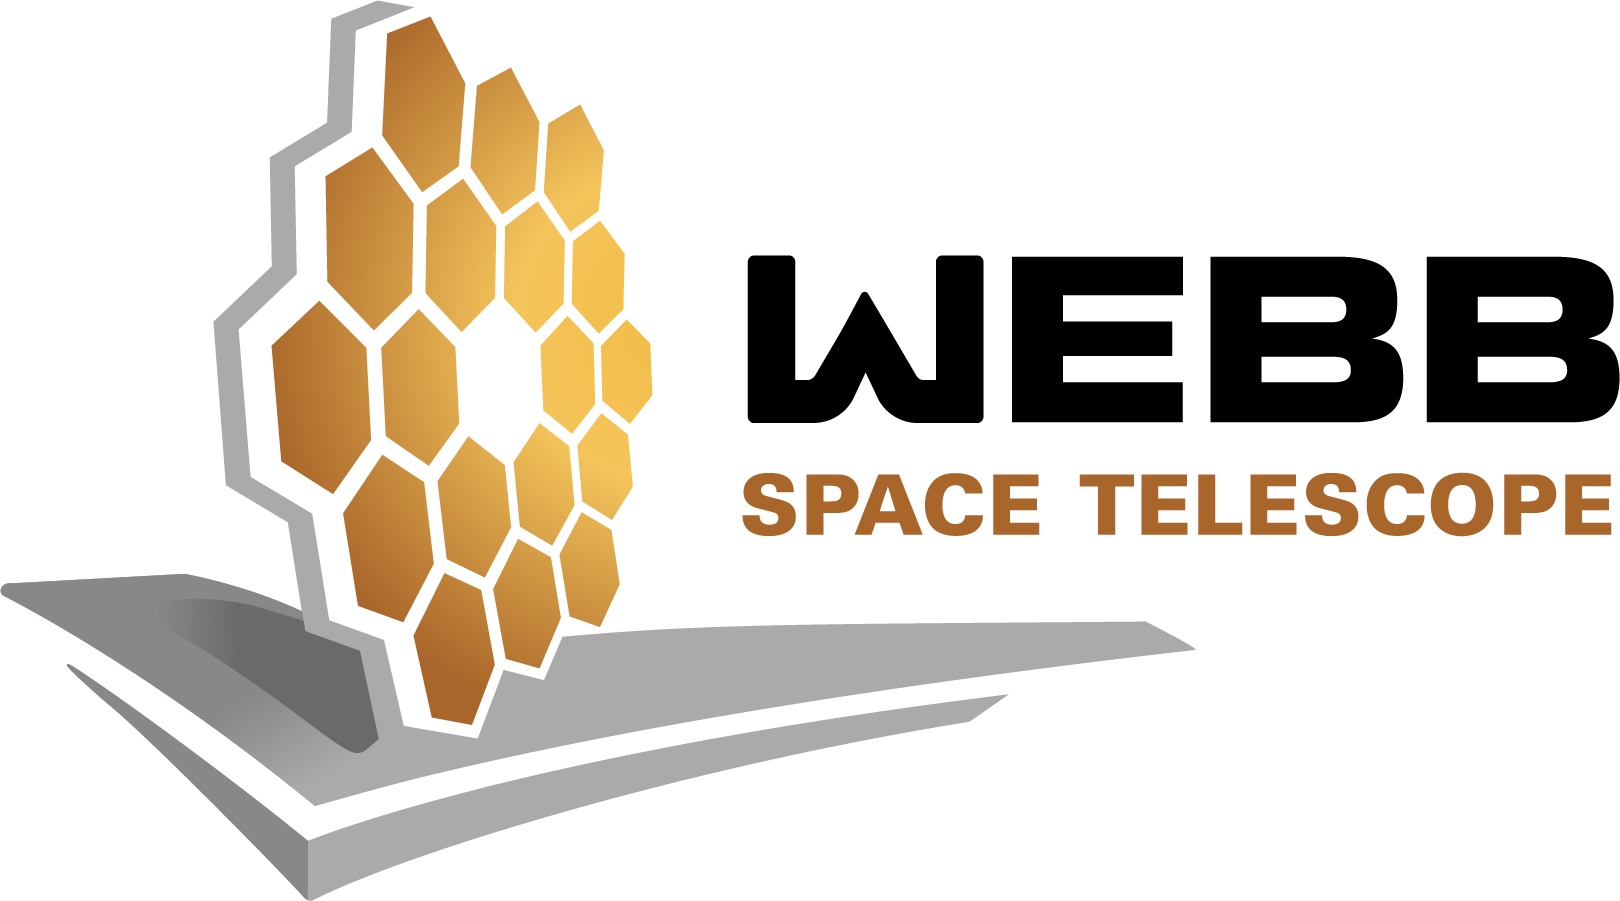 James WEBB Telescope Logo.jpg